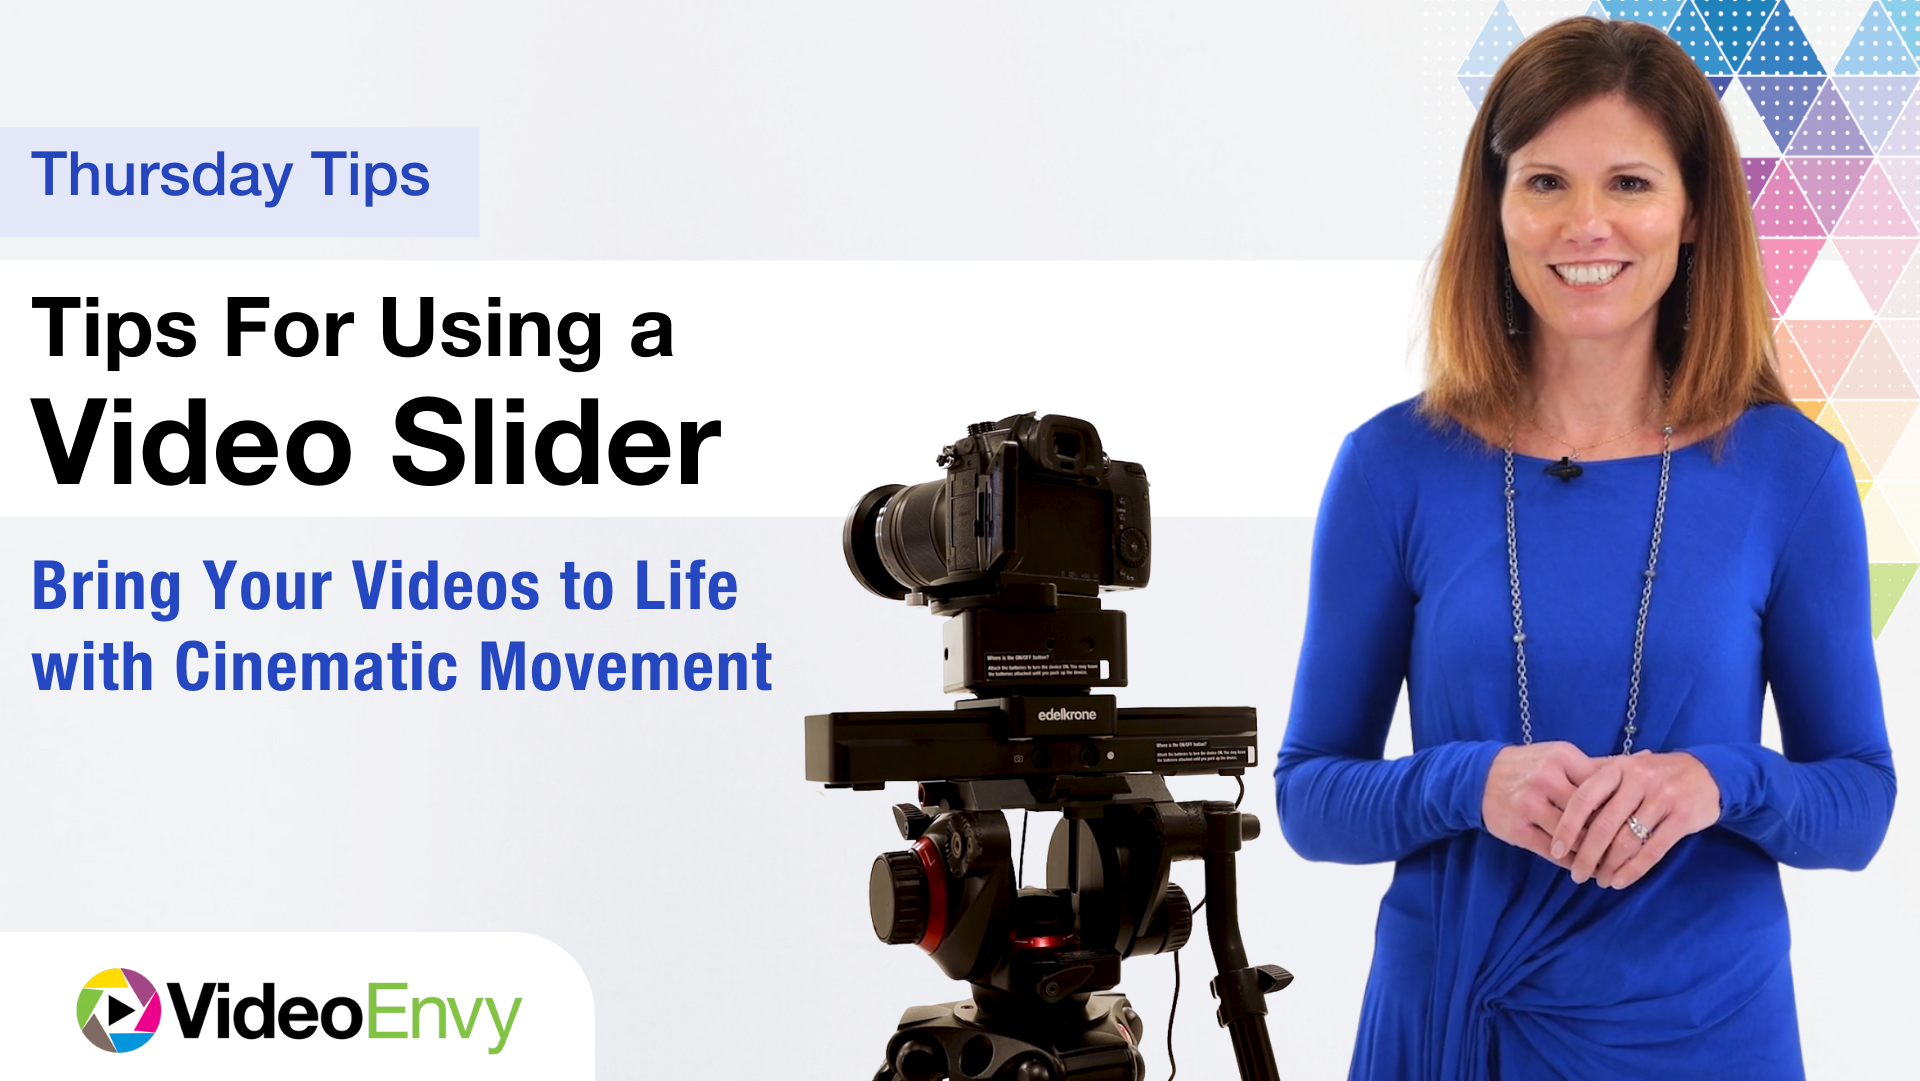 Thursday Tips: Using a Video Slider